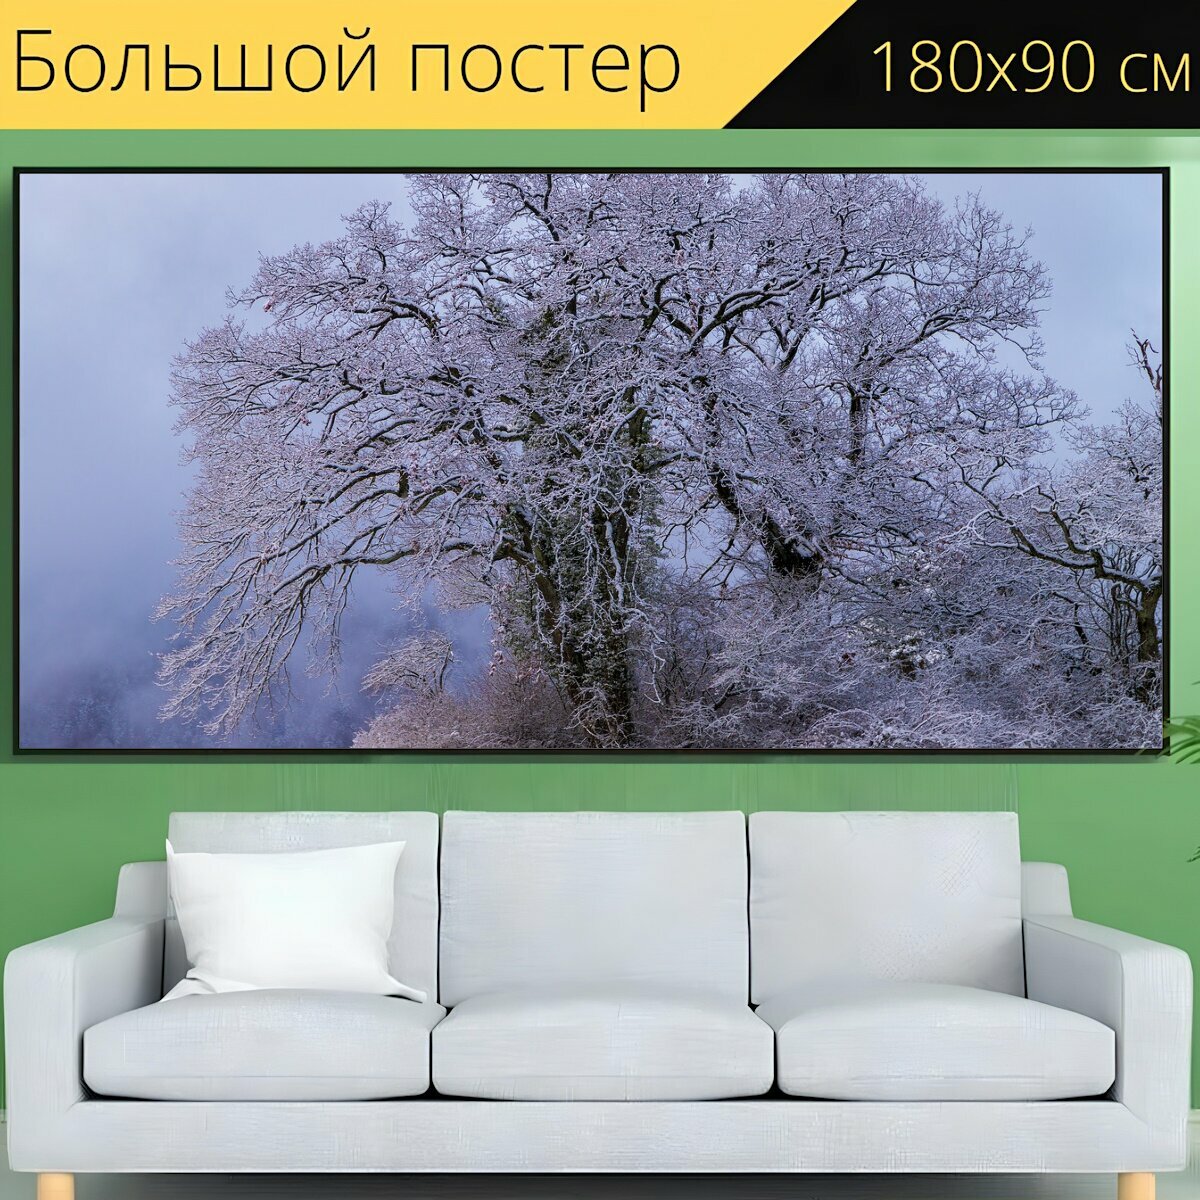 Большой постер "Дерево, снег, спелый" 180 x 90 см. для интерьера